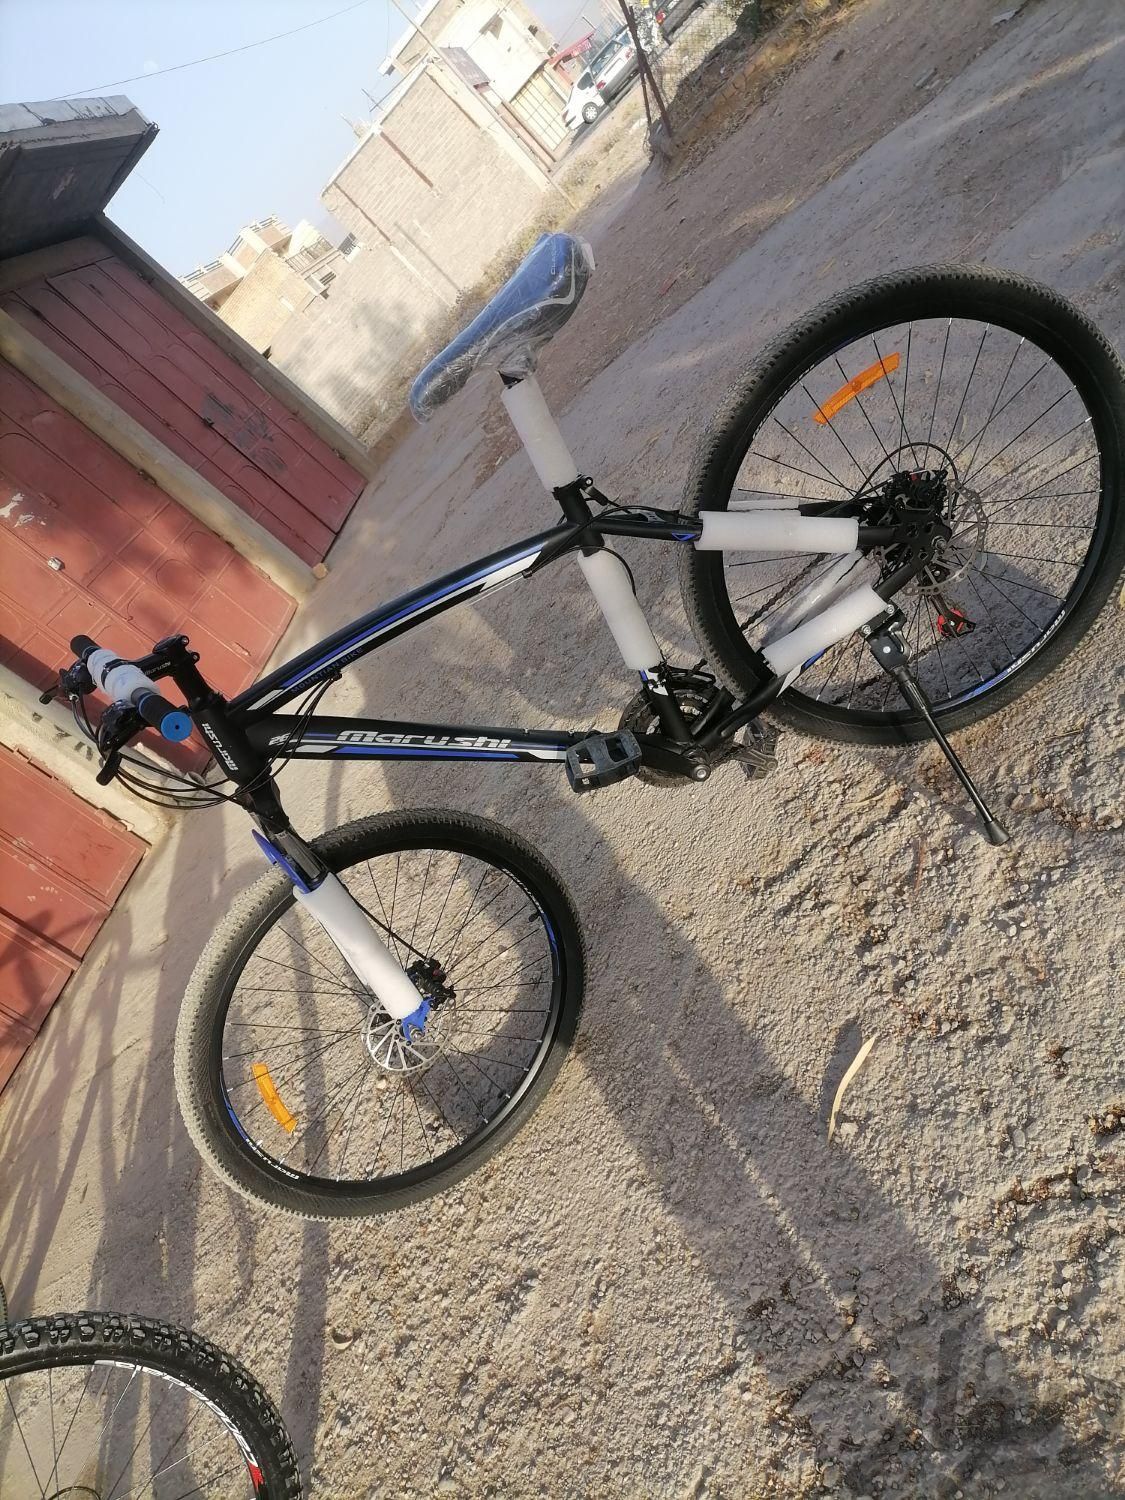 دوچرخه ۲۶|دوچرخه، اسکیت، اسکوتر|فیروزآباد, |دیوار